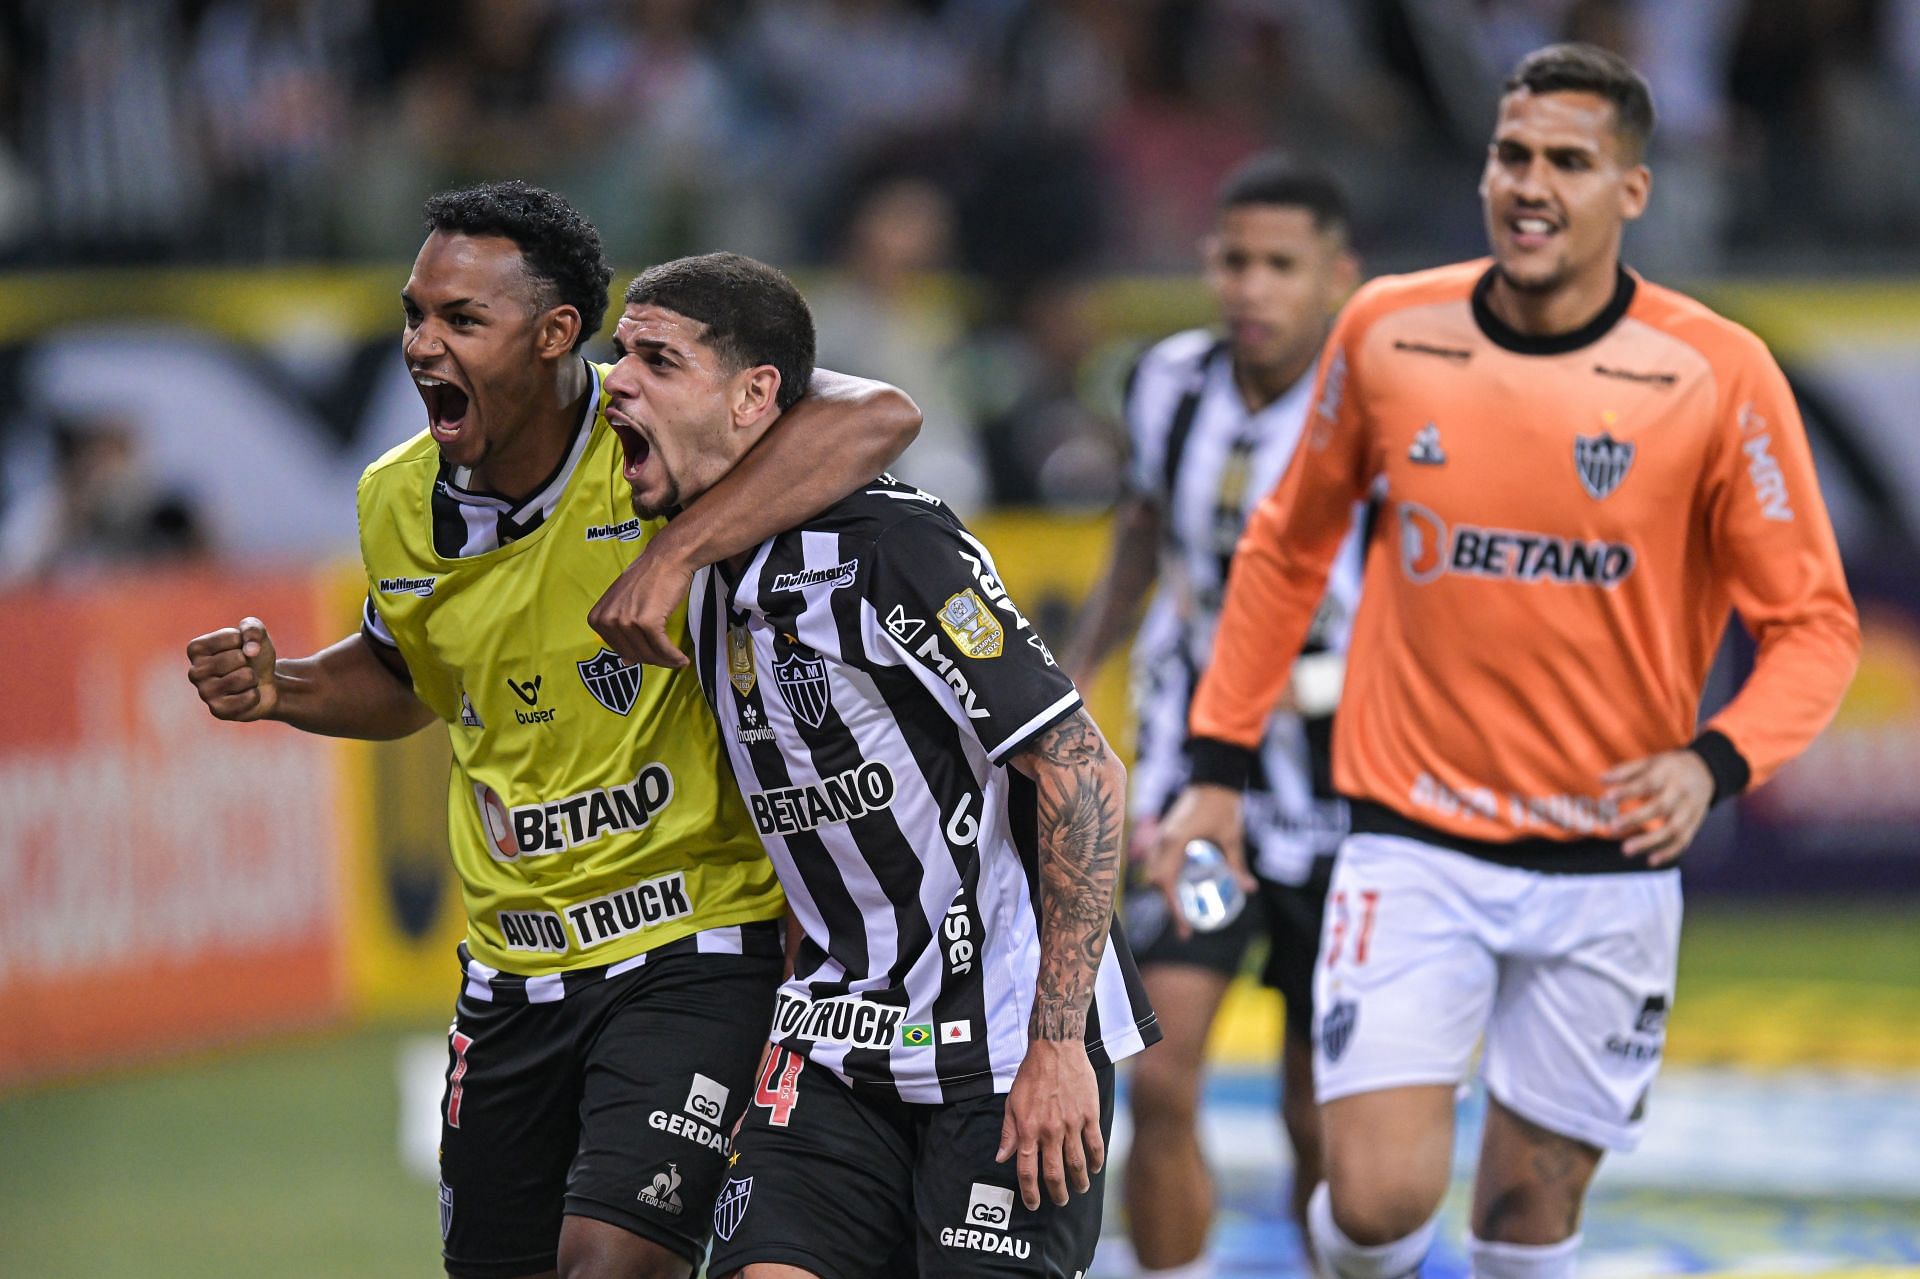 Atletico Mineiro face Emelec in their upcoming Copa Libertadores fixture on Tuesday